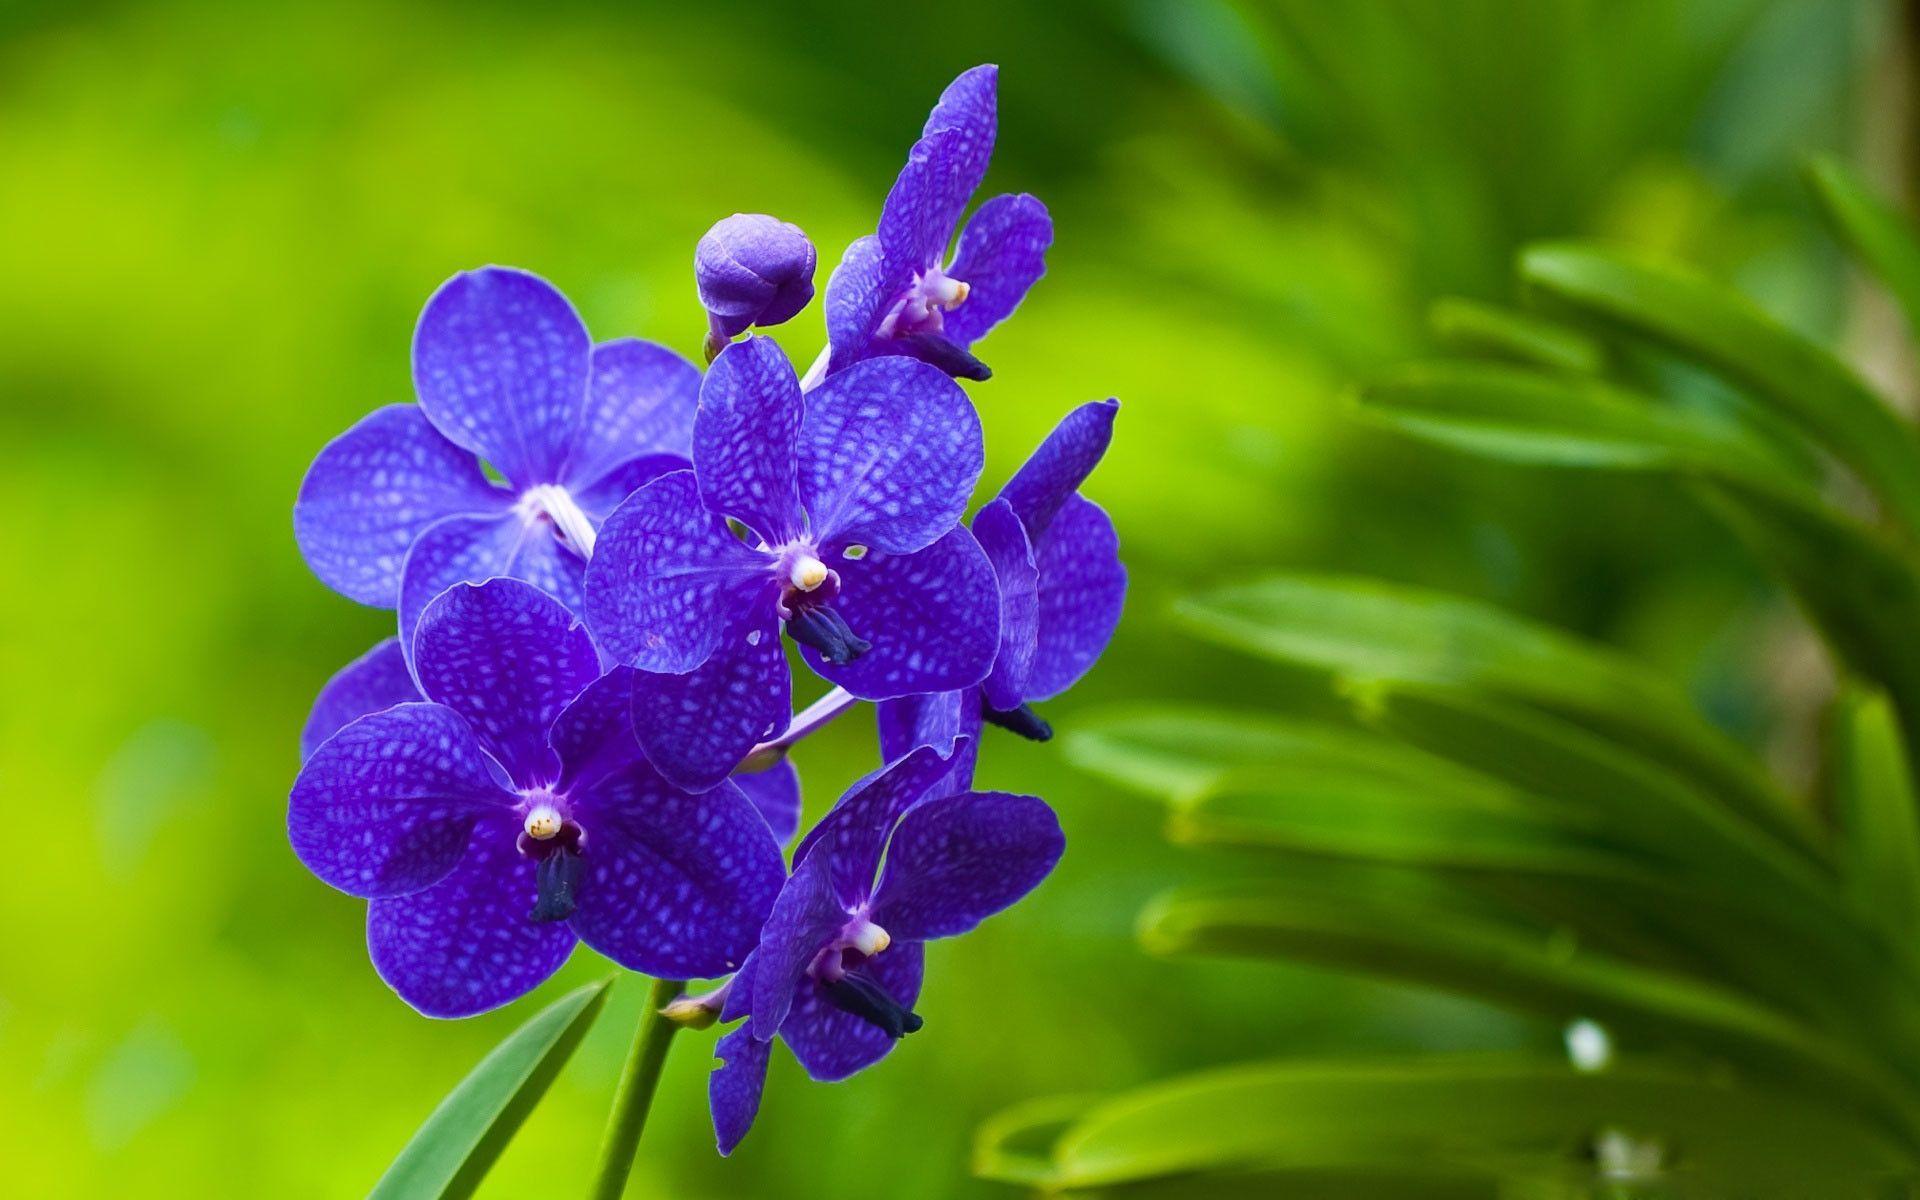 Hãy chiêm ngưỡng vẻ đẹp tinh khôi của hoa phong lan trong hình ảnh này. Cánh hoa mềm mại, màu sắc tươi sáng quyến rũ chắc chắn sẽ làm bạn thích thú. Hãy để tâm hồn được thư giãn và tìm lại sự thanh thản với hoa phong lan.